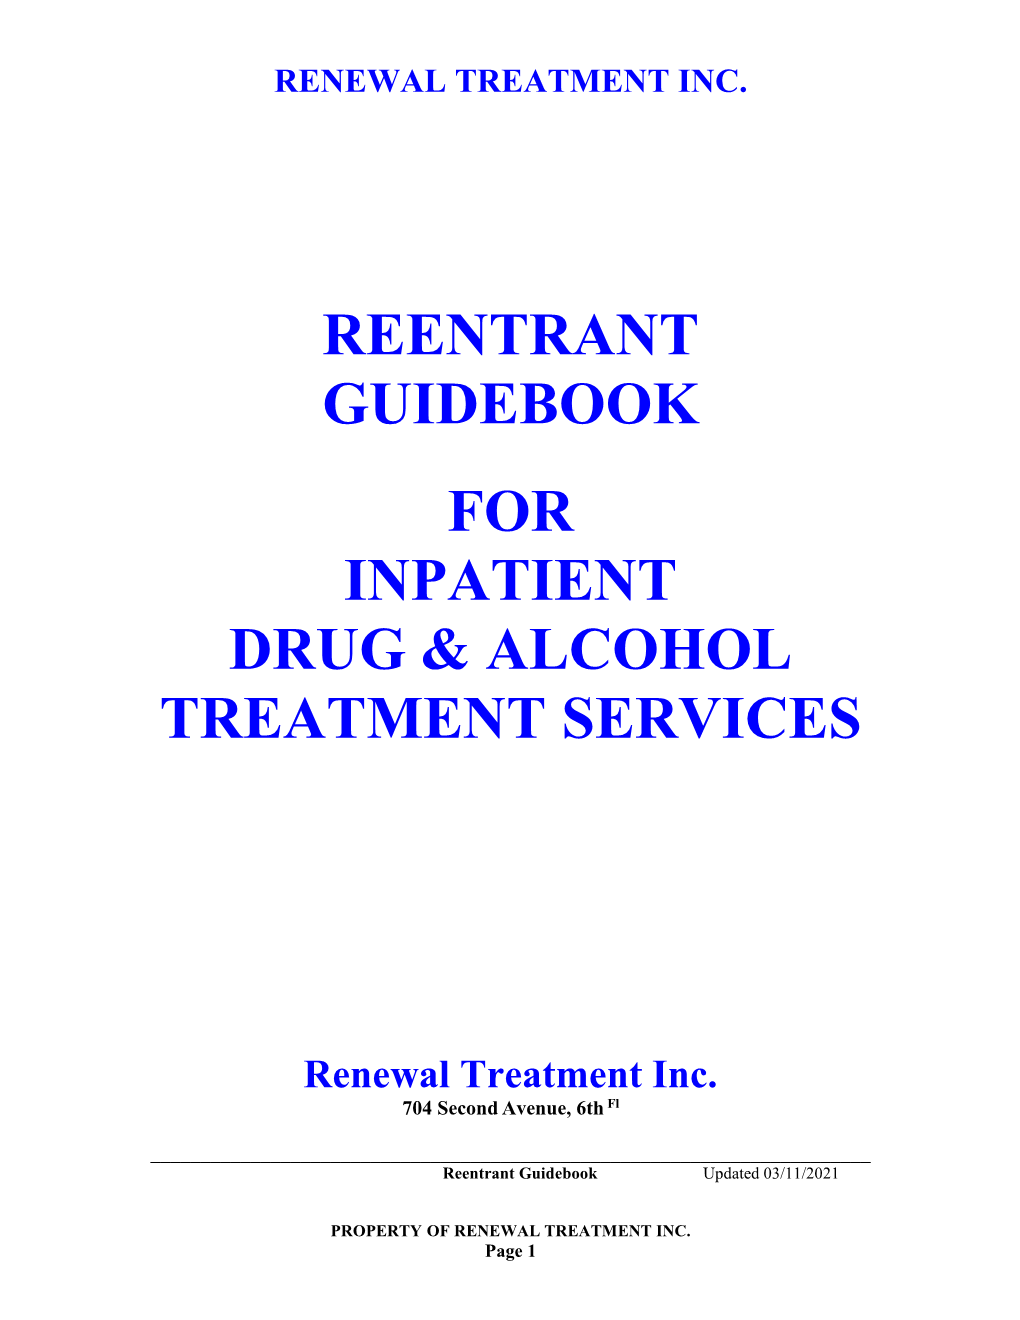 Renewal Treatment, Inc